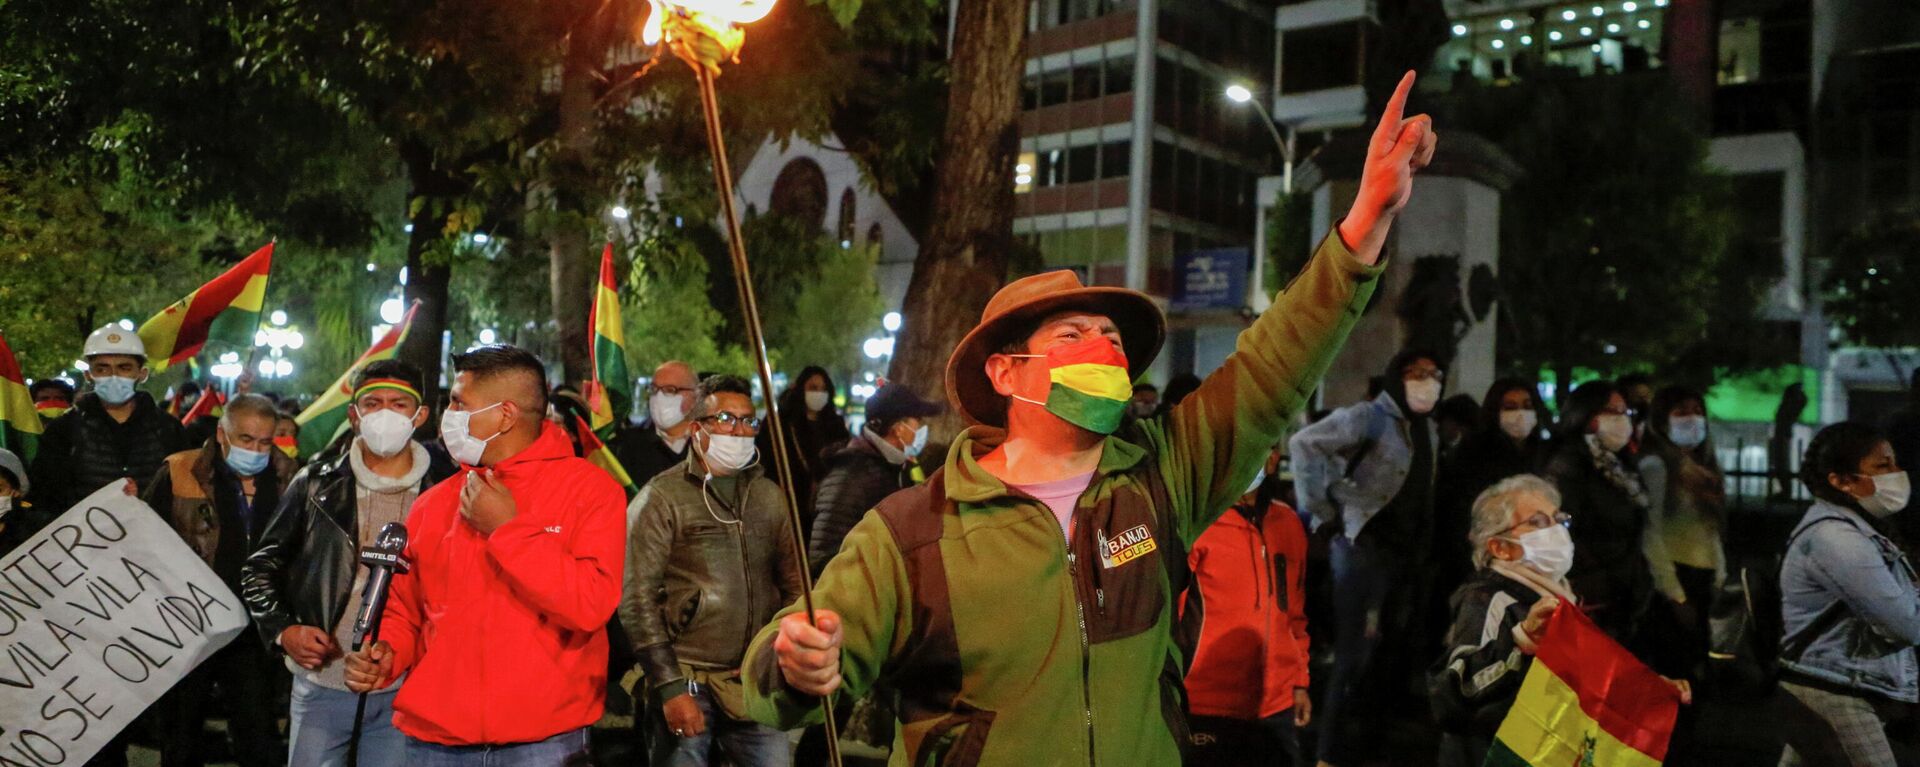 Protestas en Bolivia contra el presidente Luis Arce - Sputnik Mundo, 1920, 16.03.2021